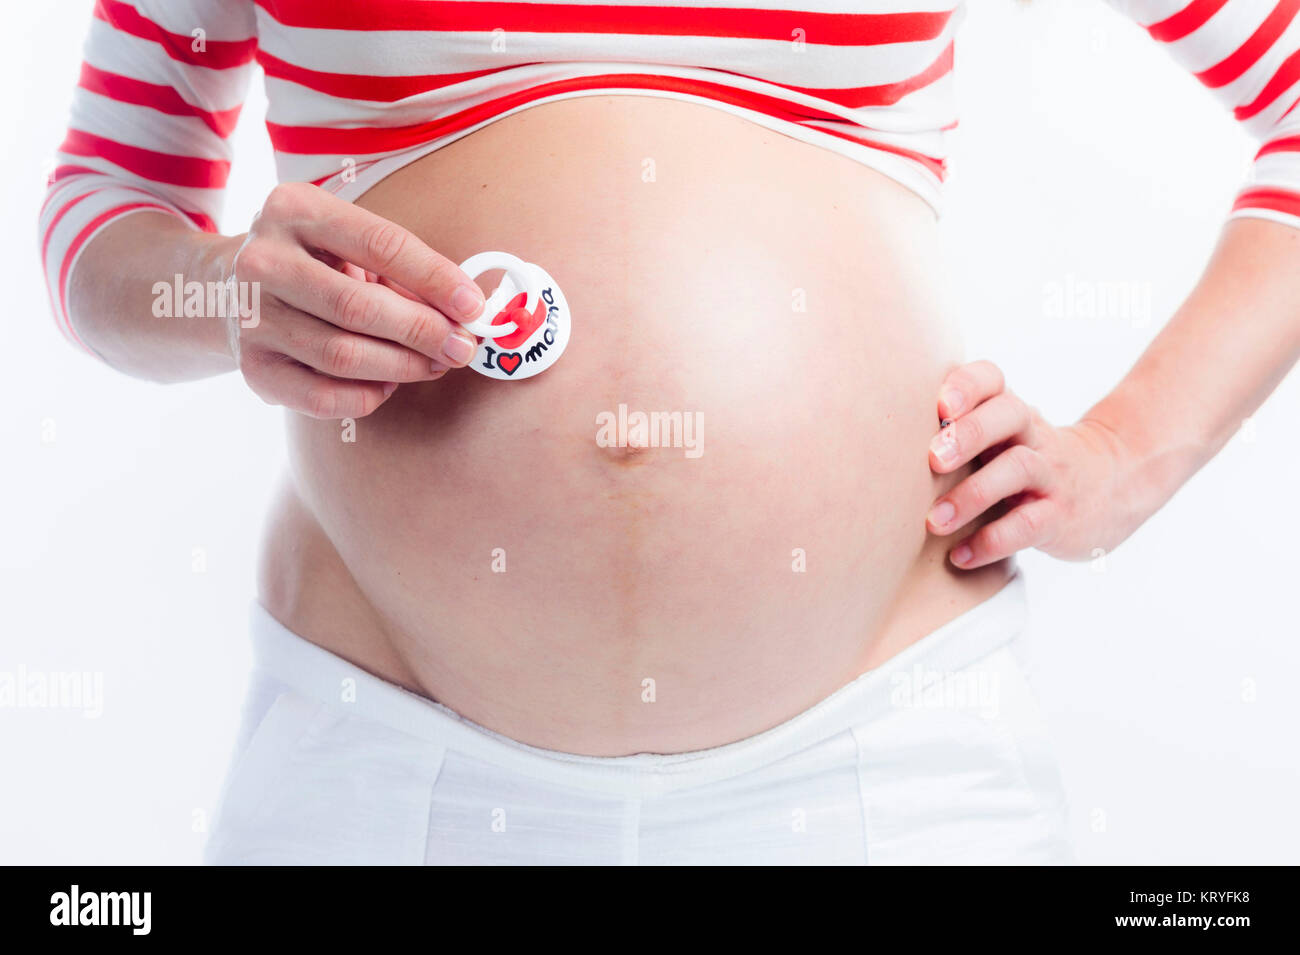 Schwangere Frau mit Schnuller am Babybauch - pregnant woman with dummy Stock Photo